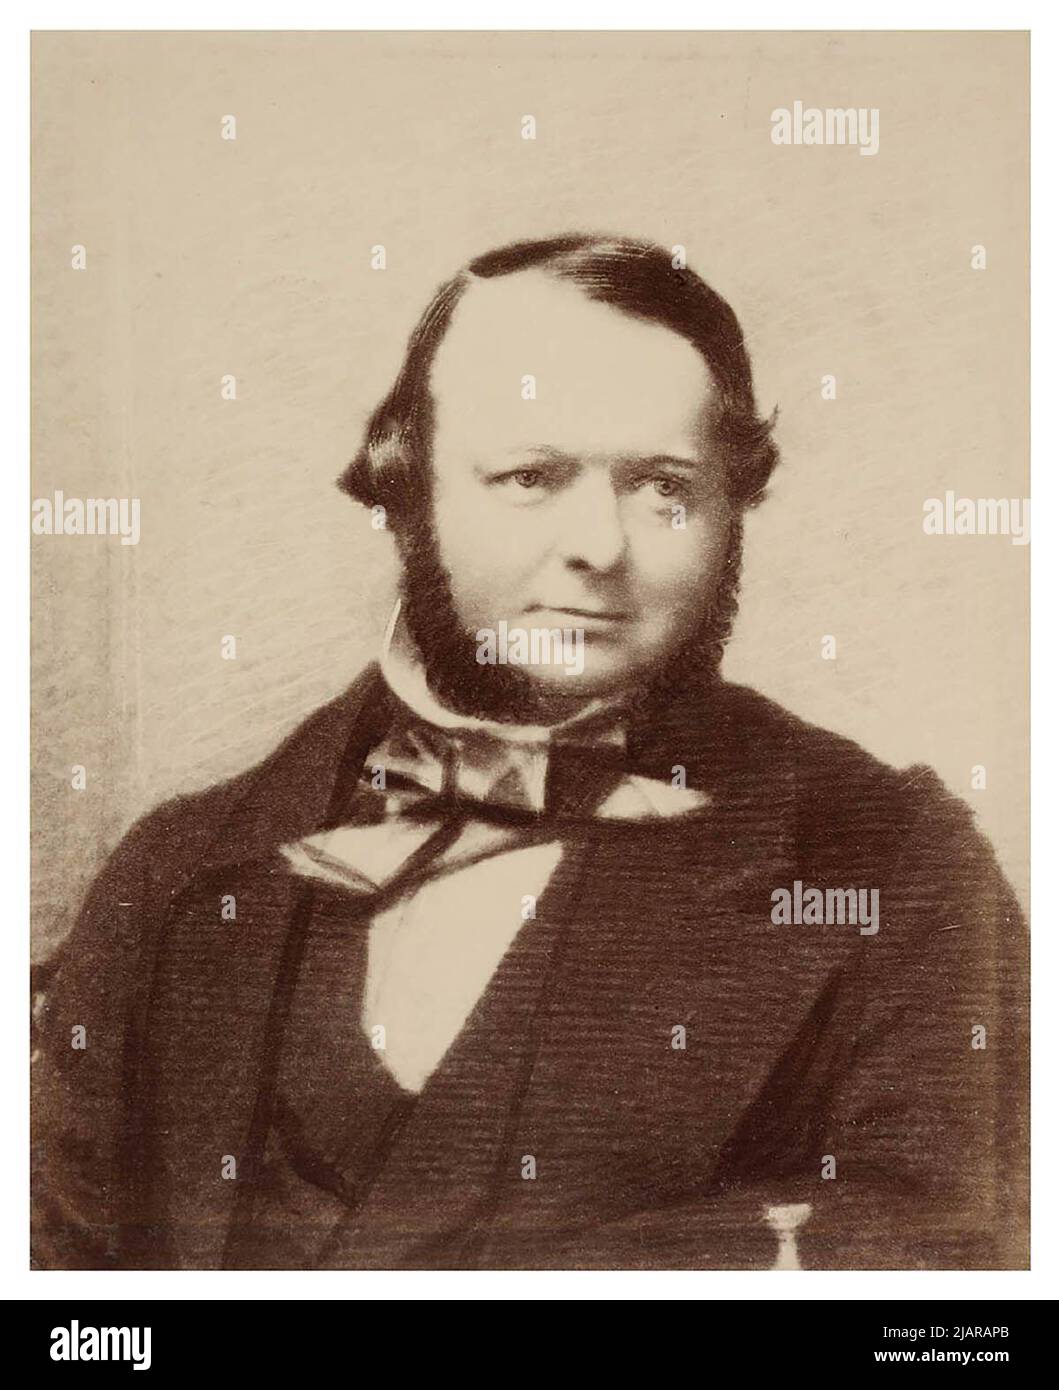 Stuart Donaldson, 1st Premier ministre de Nouvelle-Galles du Sud, Australie, entre 1850 et 1900 Banque D'Images